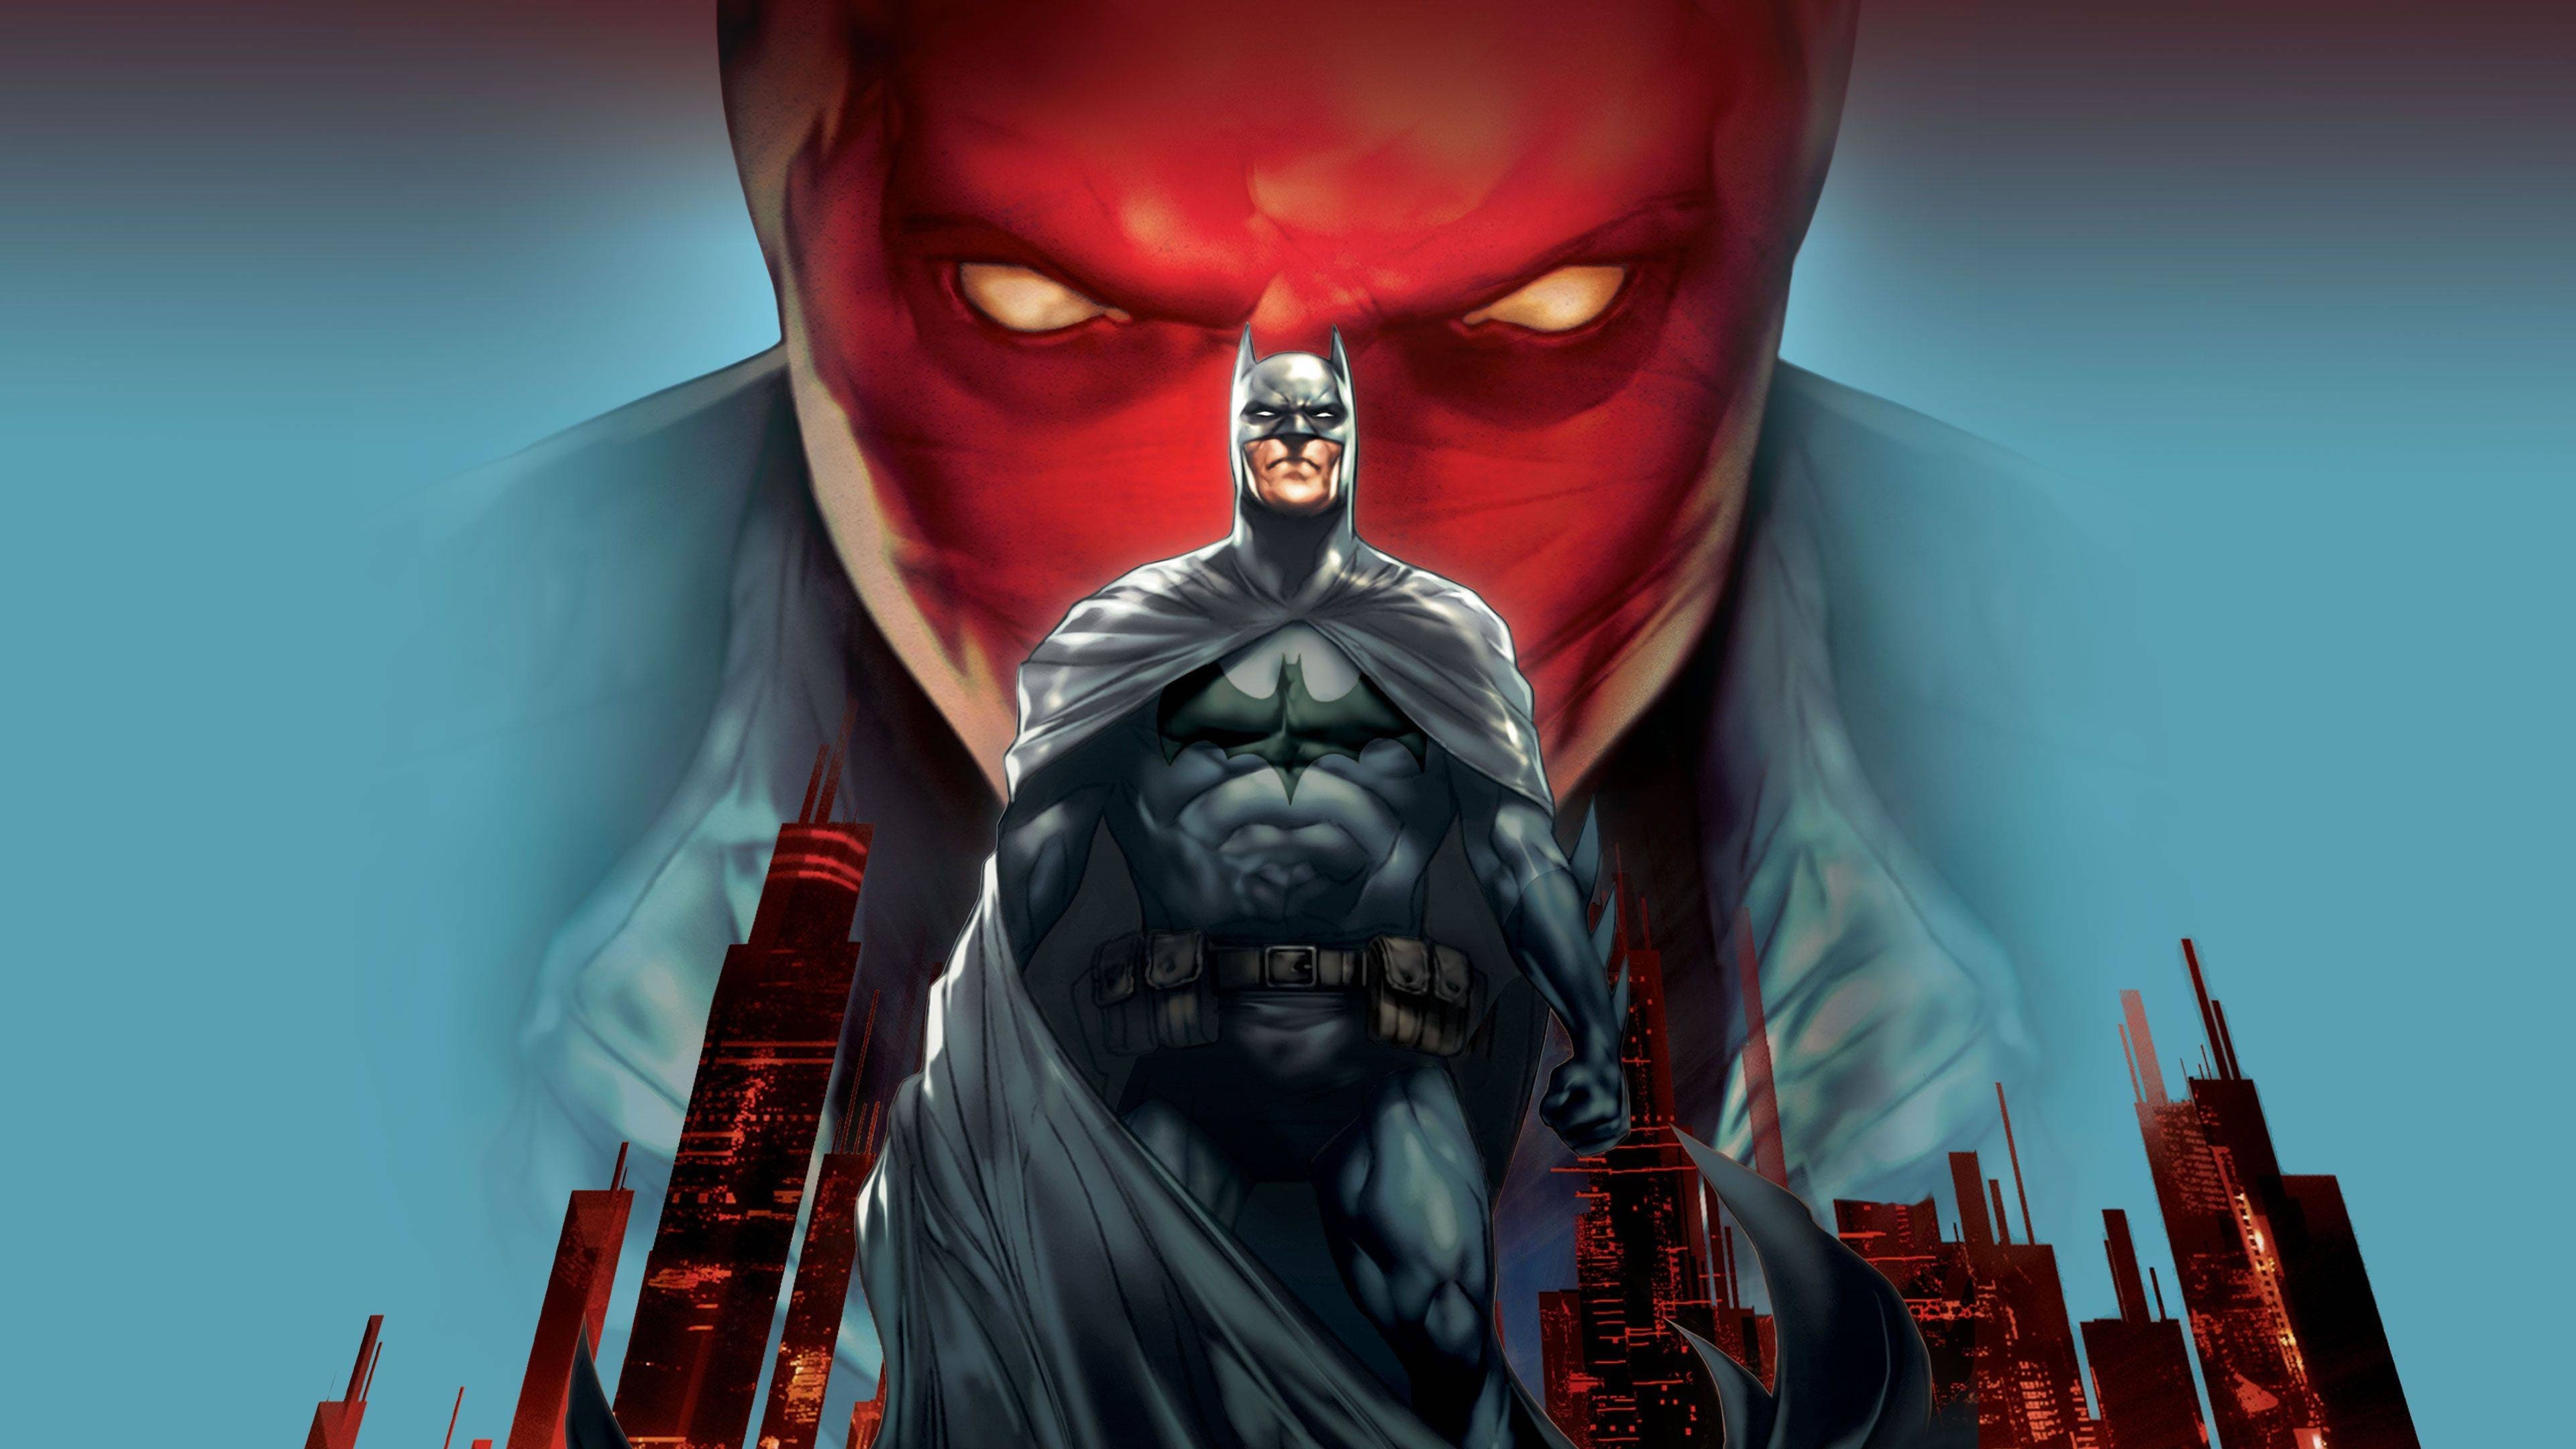 Batman: El Misterio de Capucha Roja